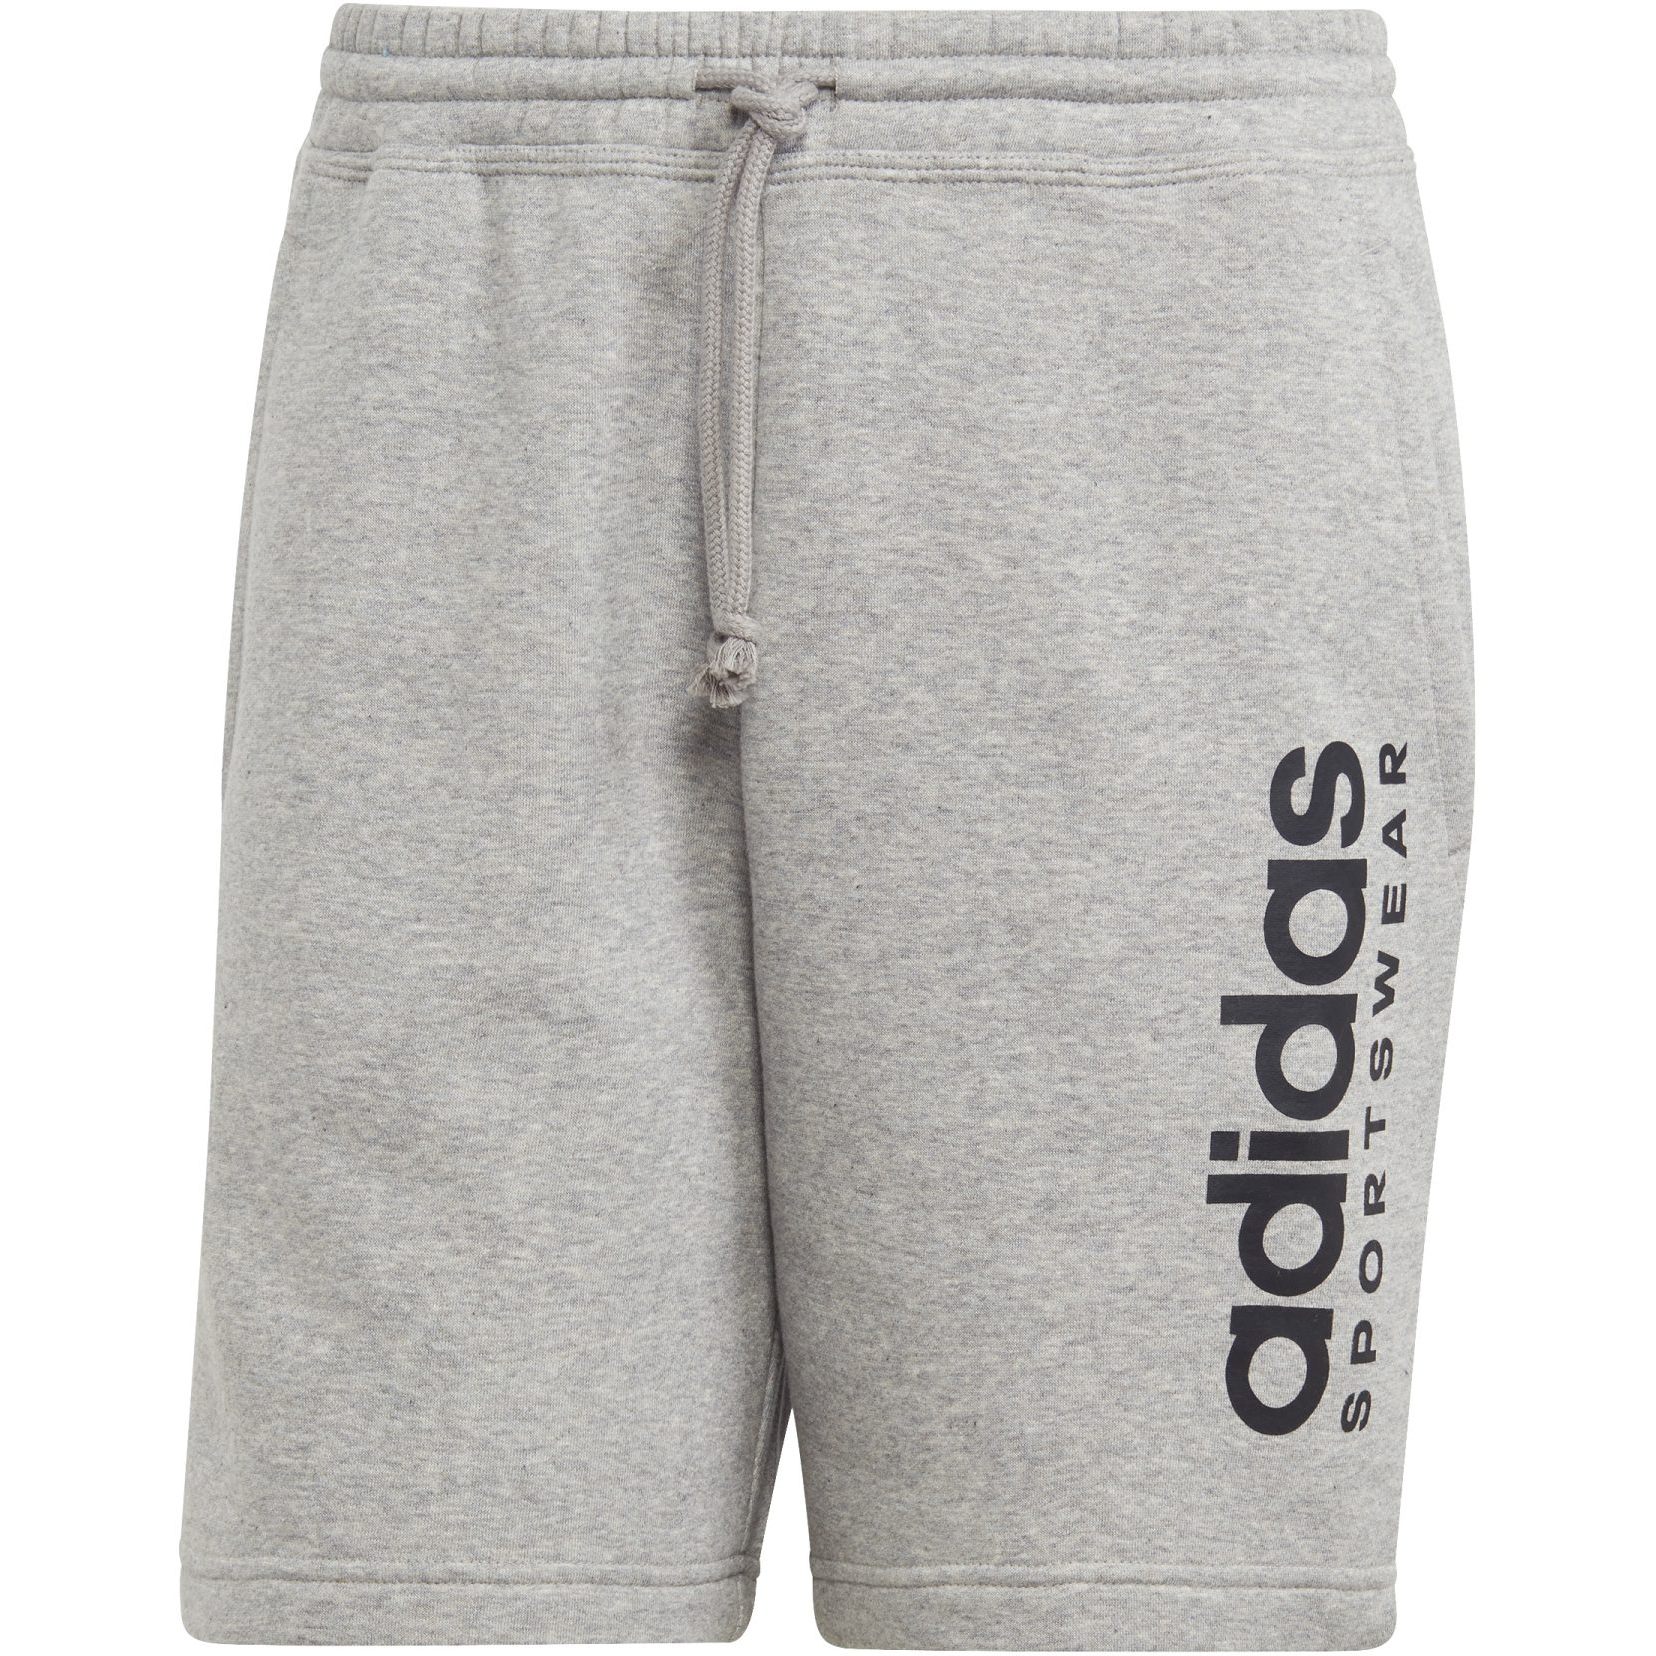 Produktbild von adidas Männer All SZN Fleece Graphic Shorts - medium grey heather IC9796